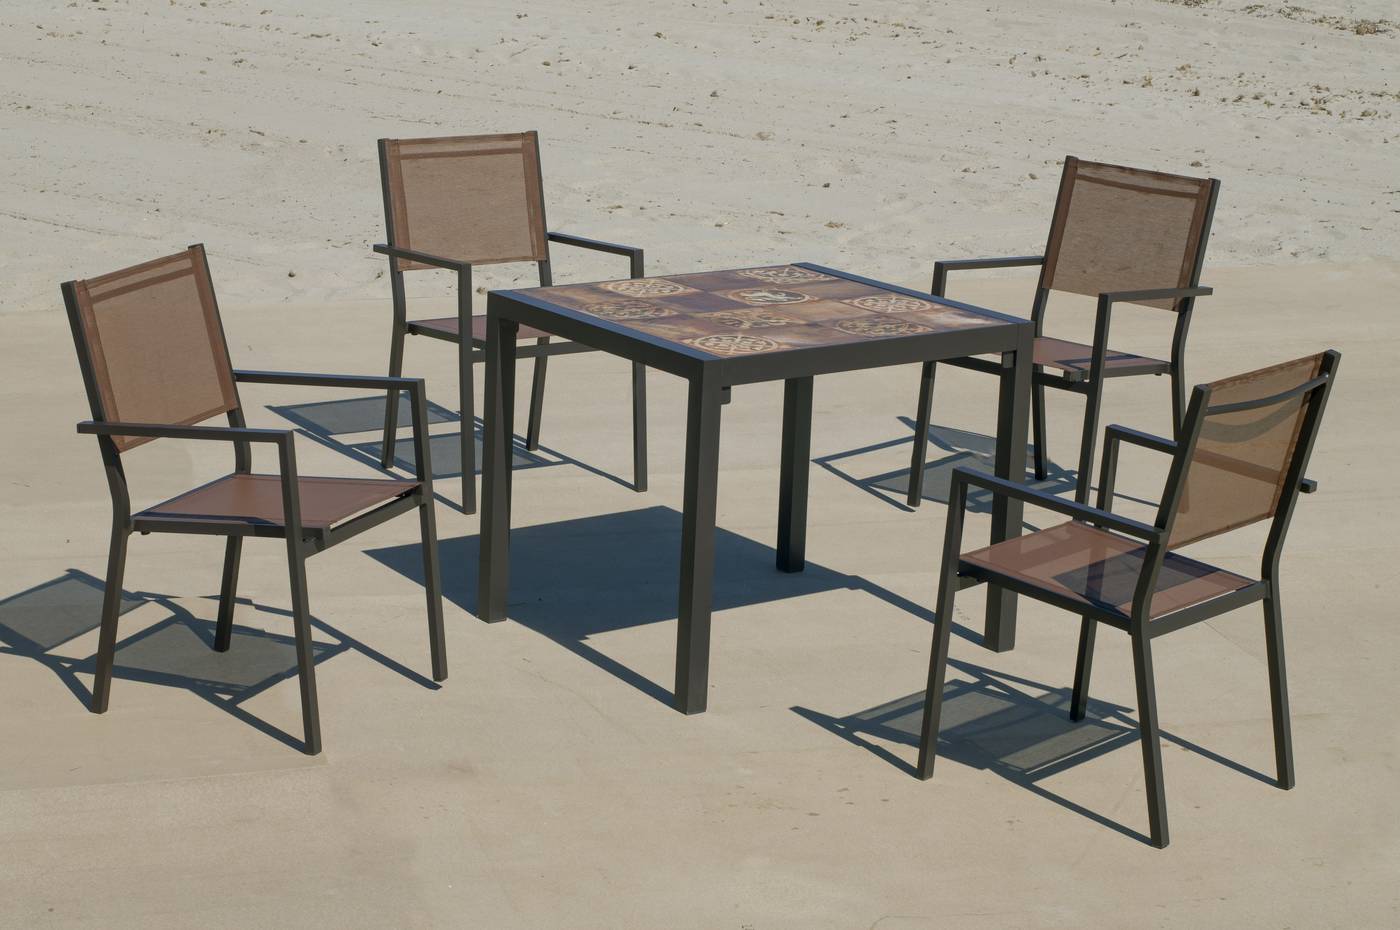 Conjunto de aluminio color marrón: Mesa cuadrada con tablero mosaico de 80 cm + 4 sillones de textilen.